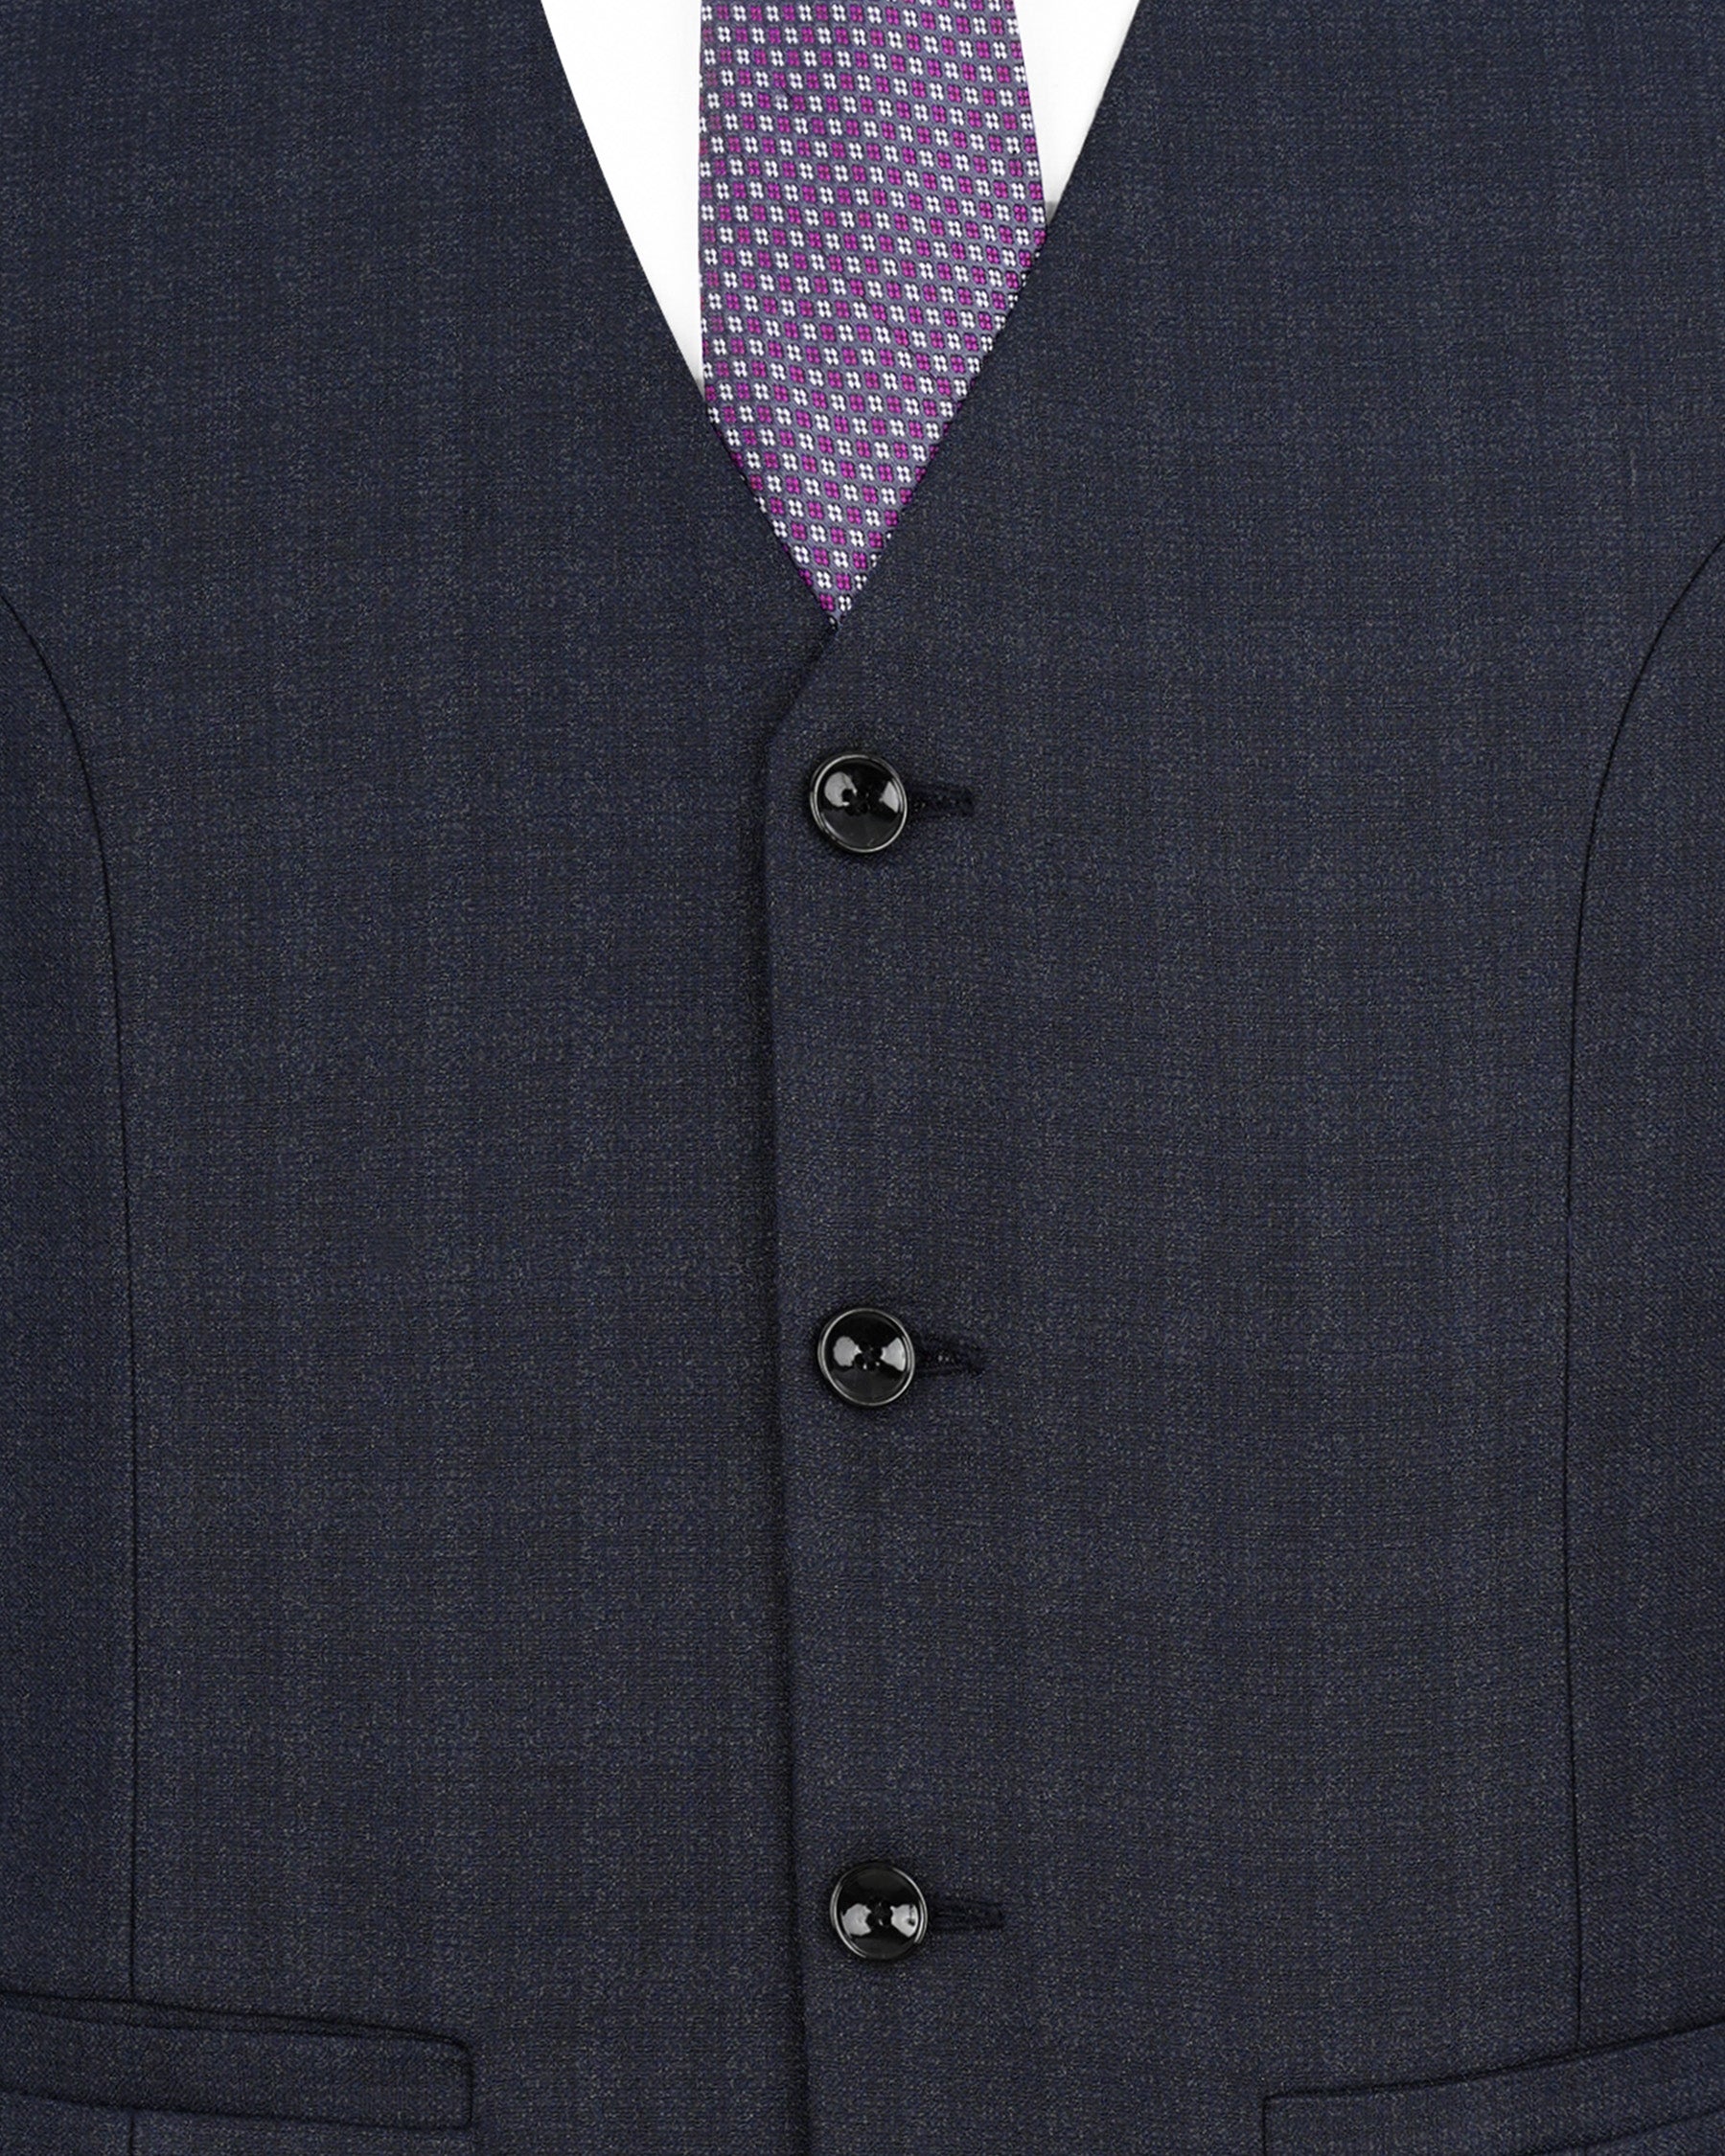 Gunmetal Blue Subtle Plaid Double Breasted Suit